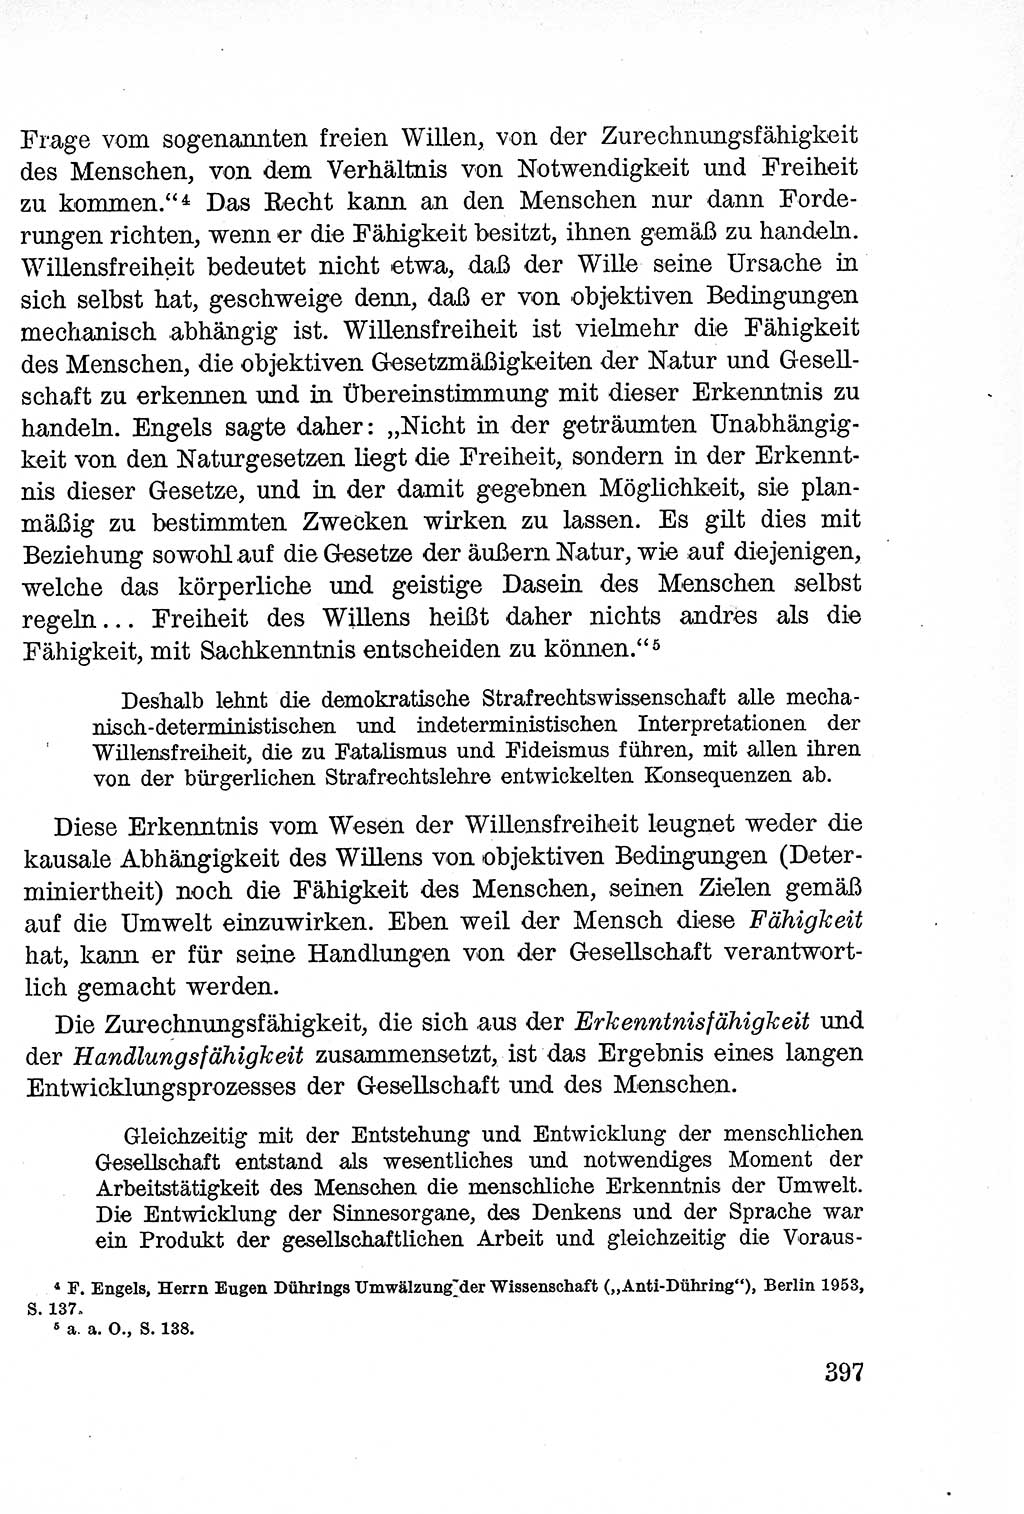 Lehrbuch des Strafrechts der Deutschen Demokratischen Republik (DDR), Allgemeiner Teil 1957, Seite 397 (Lb. Strafr. DDR AT 1957, S. 397)